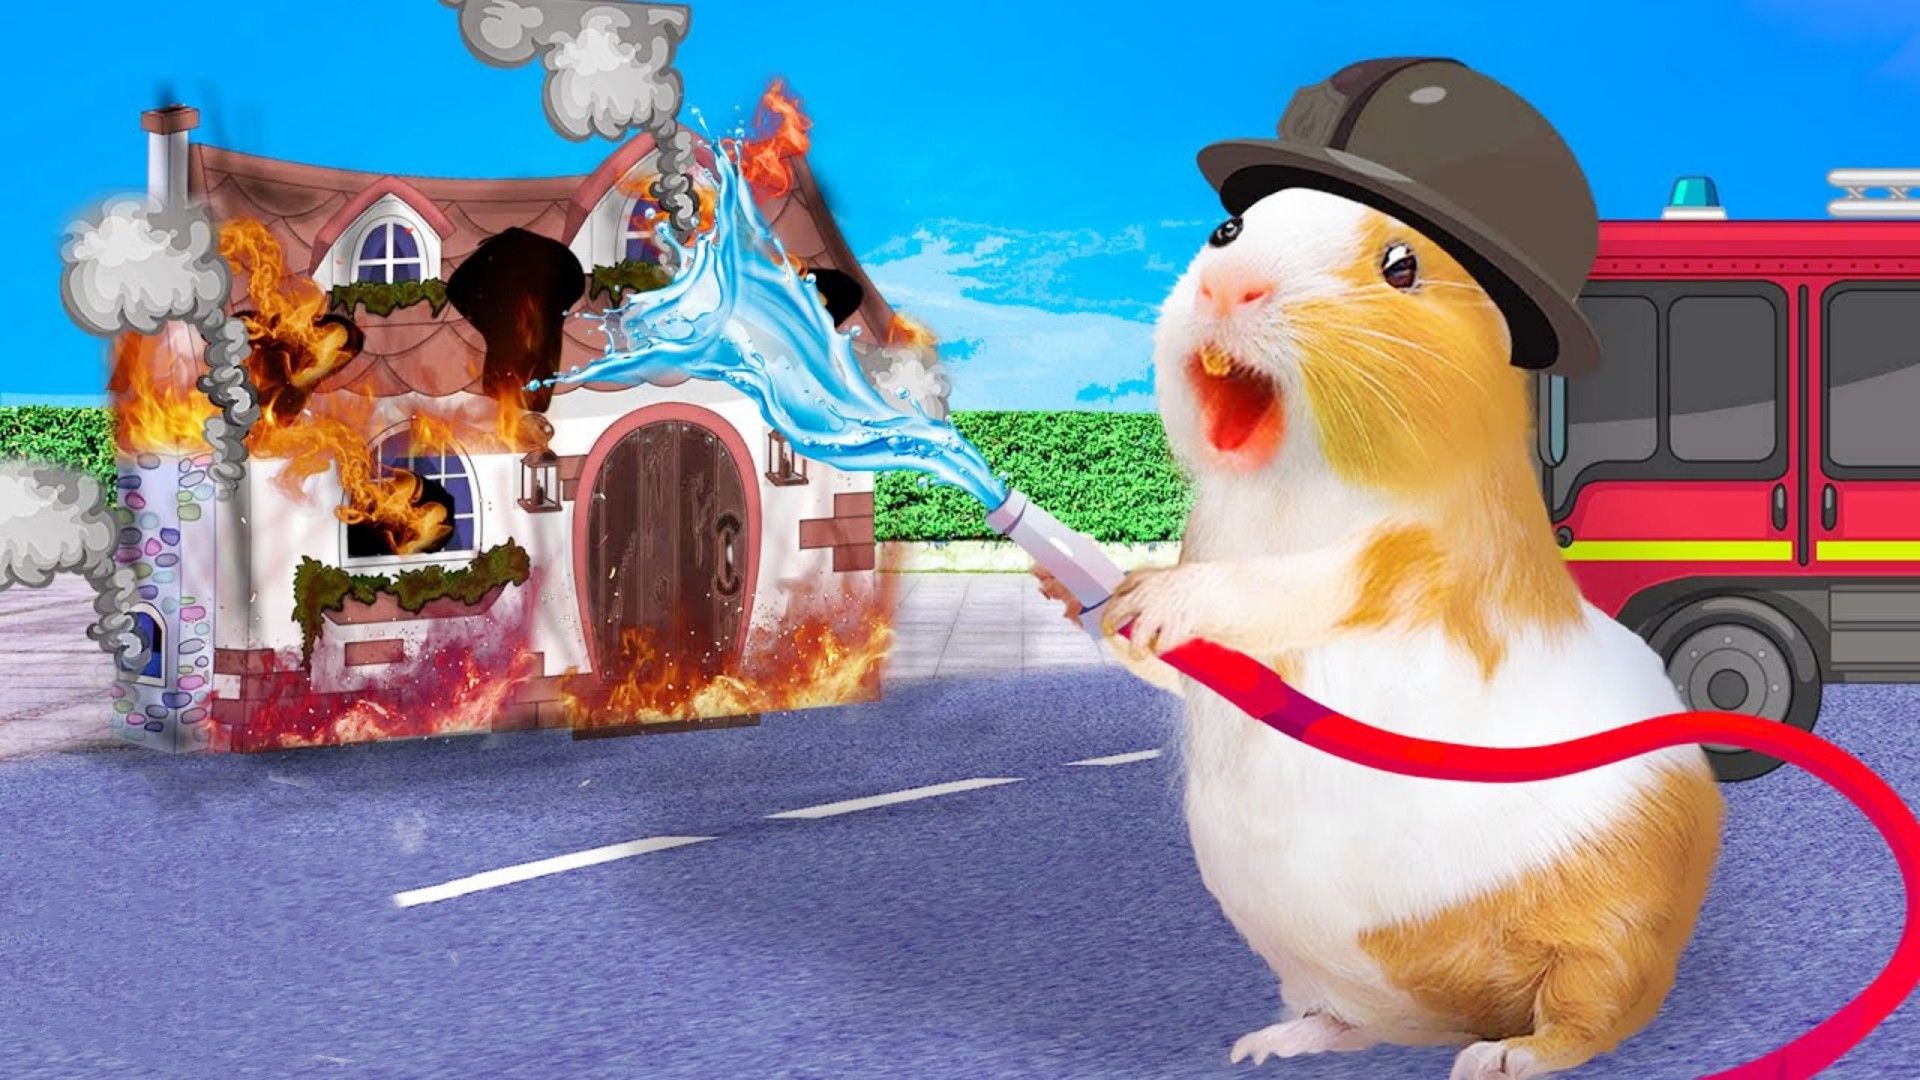 小仓鼠大冒险:仓鼠的十大梦想合集,成为一名合格的消防员!